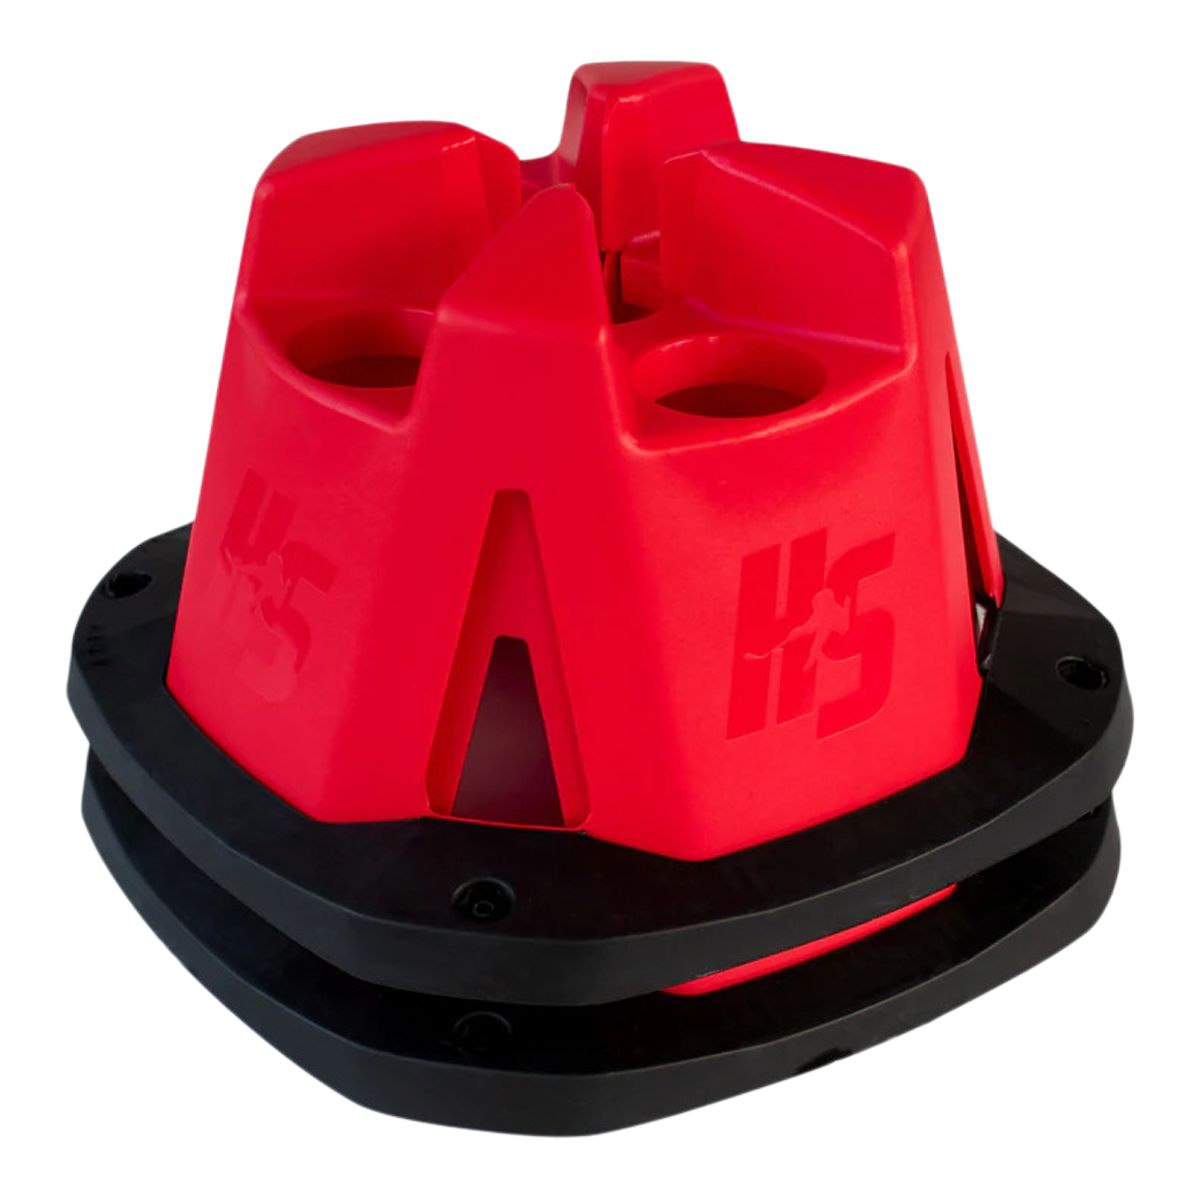 HockeyShot Adapt Cone - 2 Pack